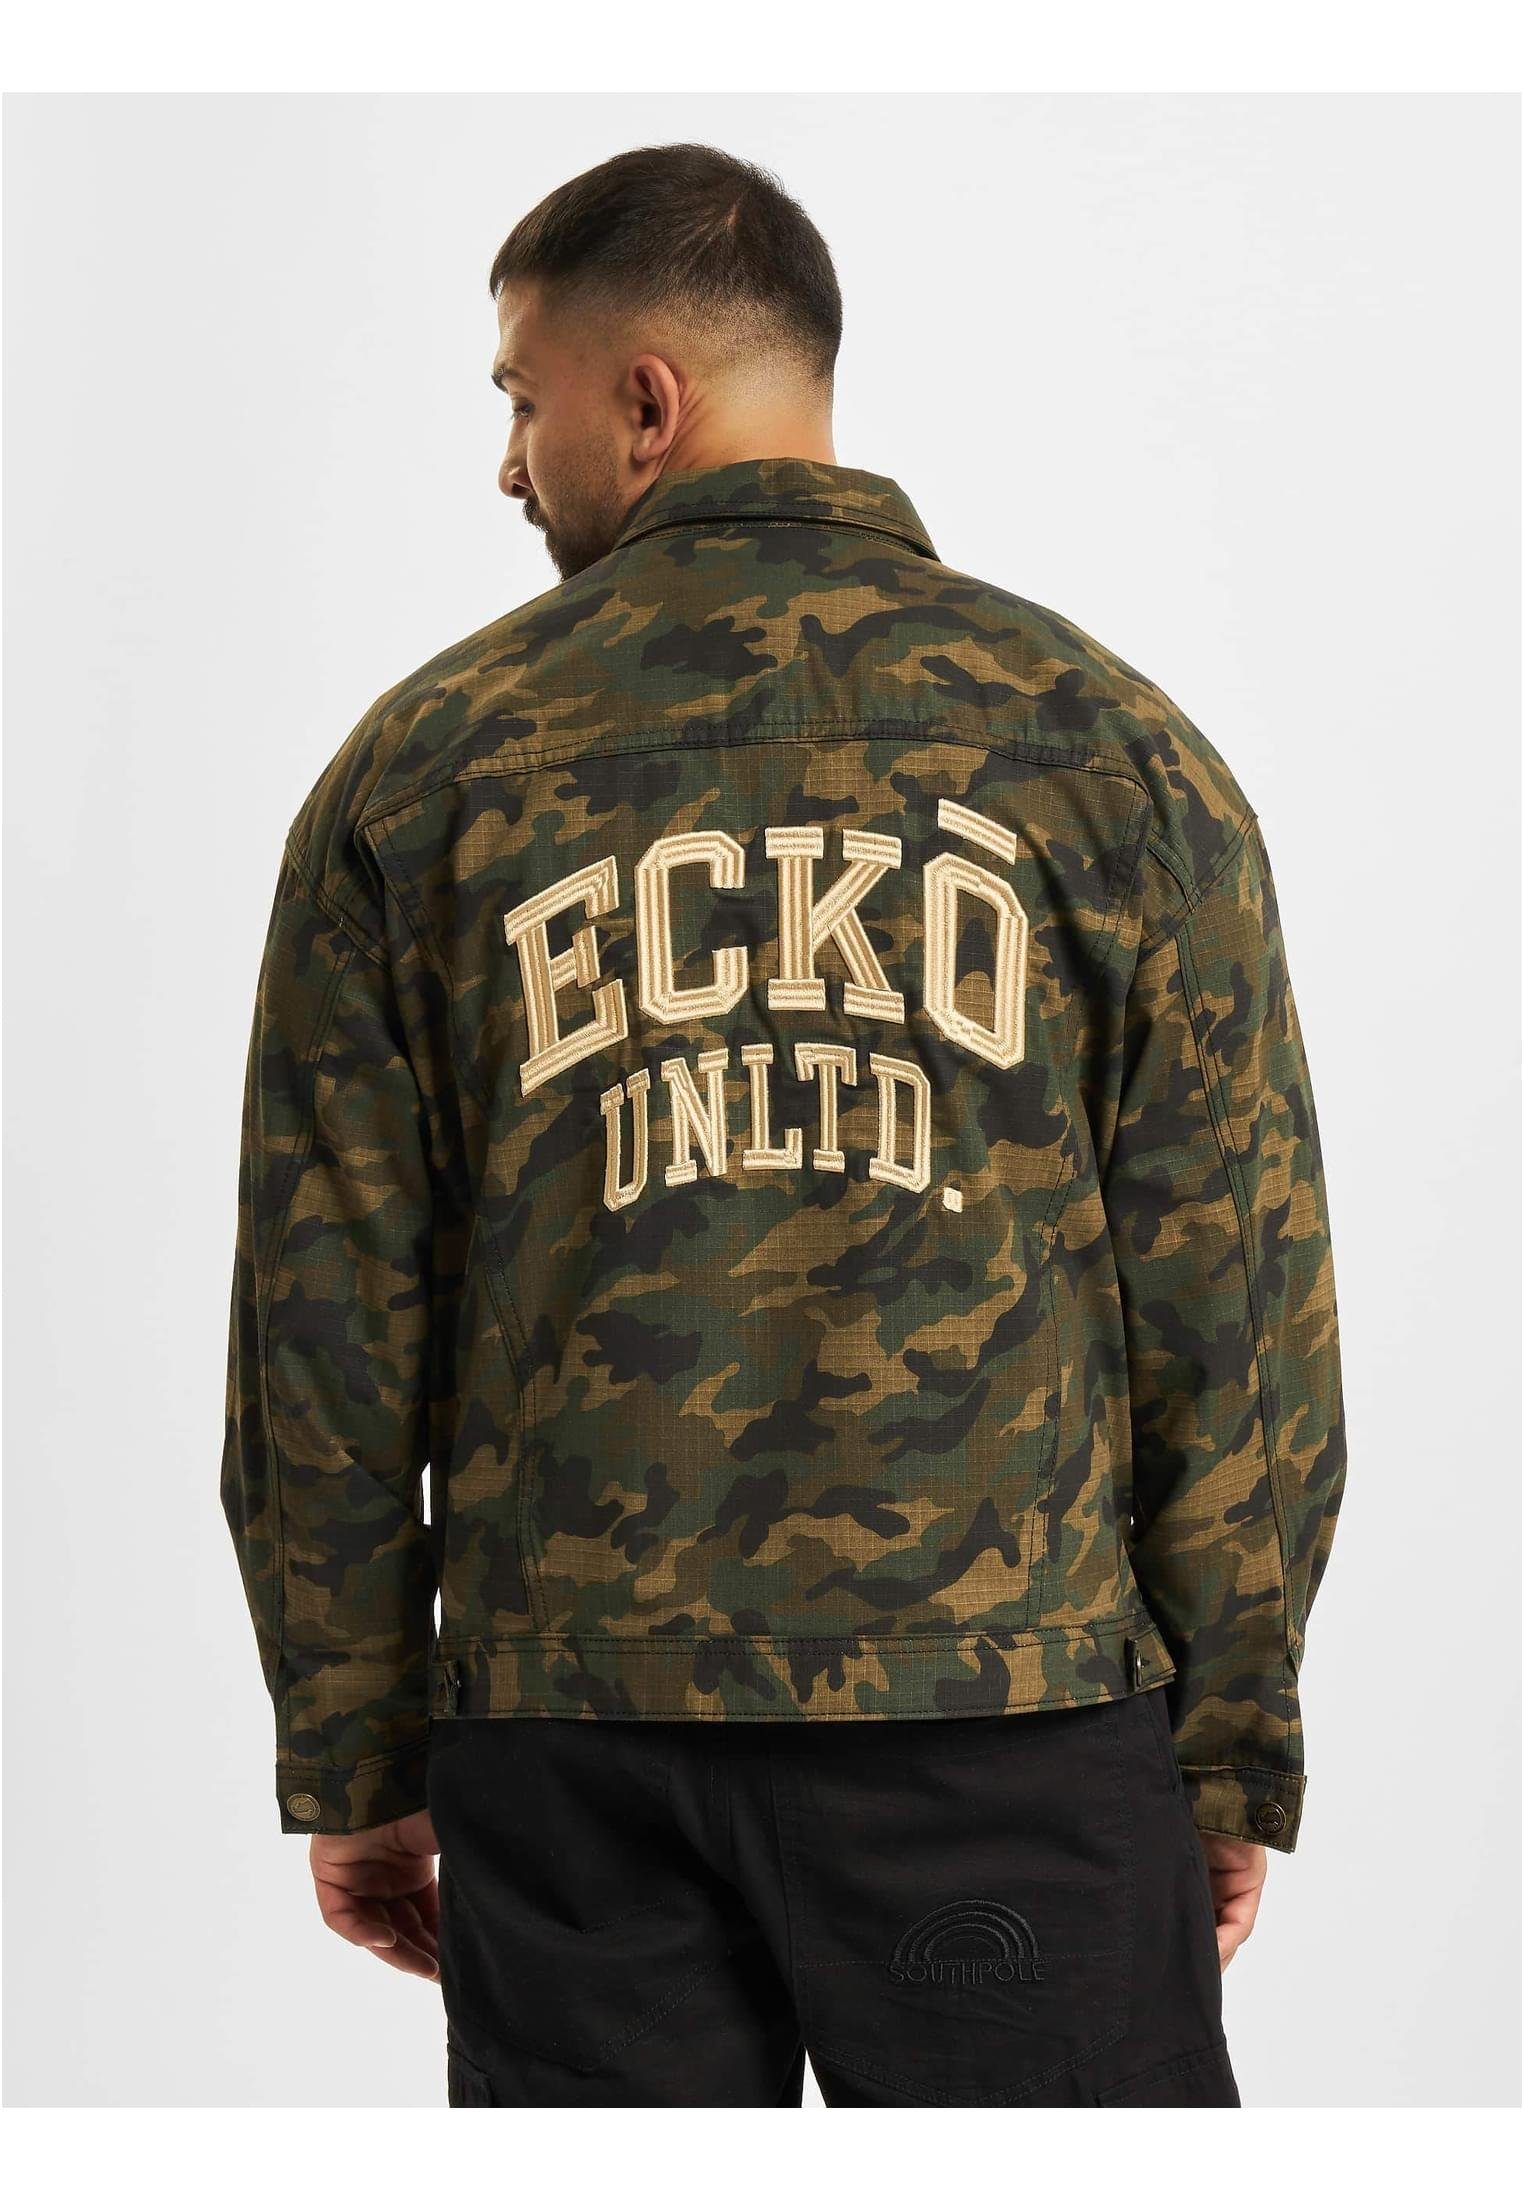 Unltd. Burke (1-St) Ecko Jeans Camouflage Unltd. Jacket Sommerjacke Jeansjacken Ecko